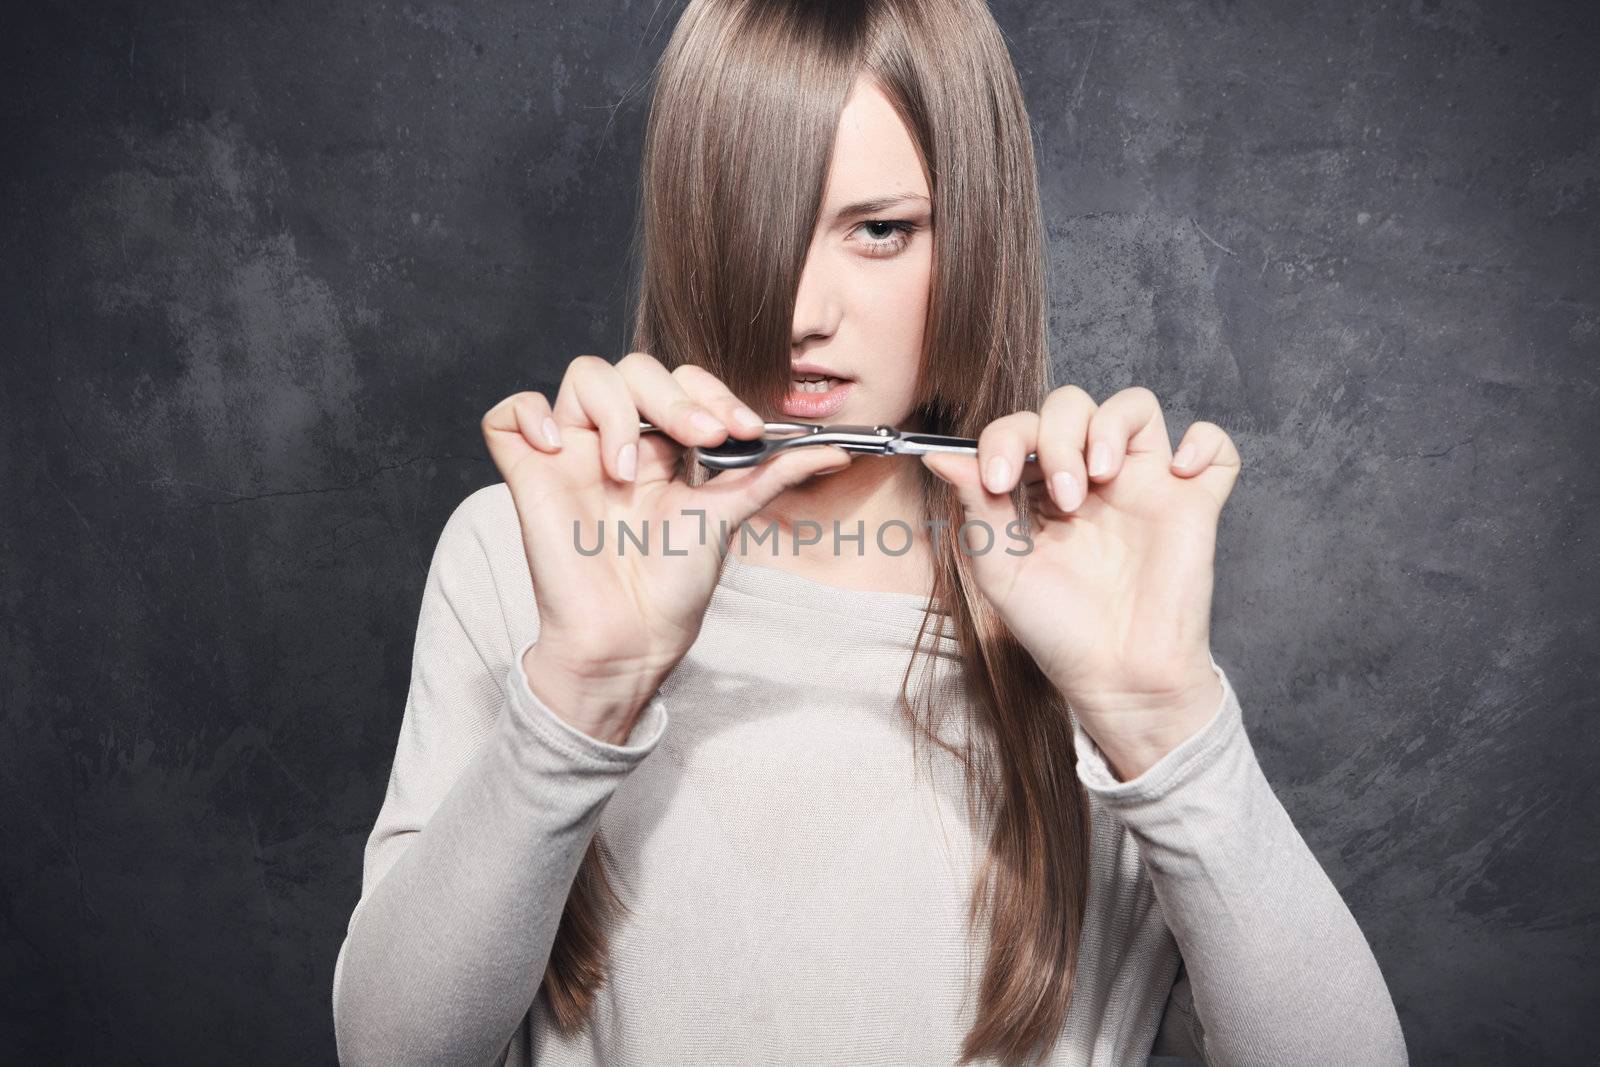 Girl with scissors by robert_przybysz